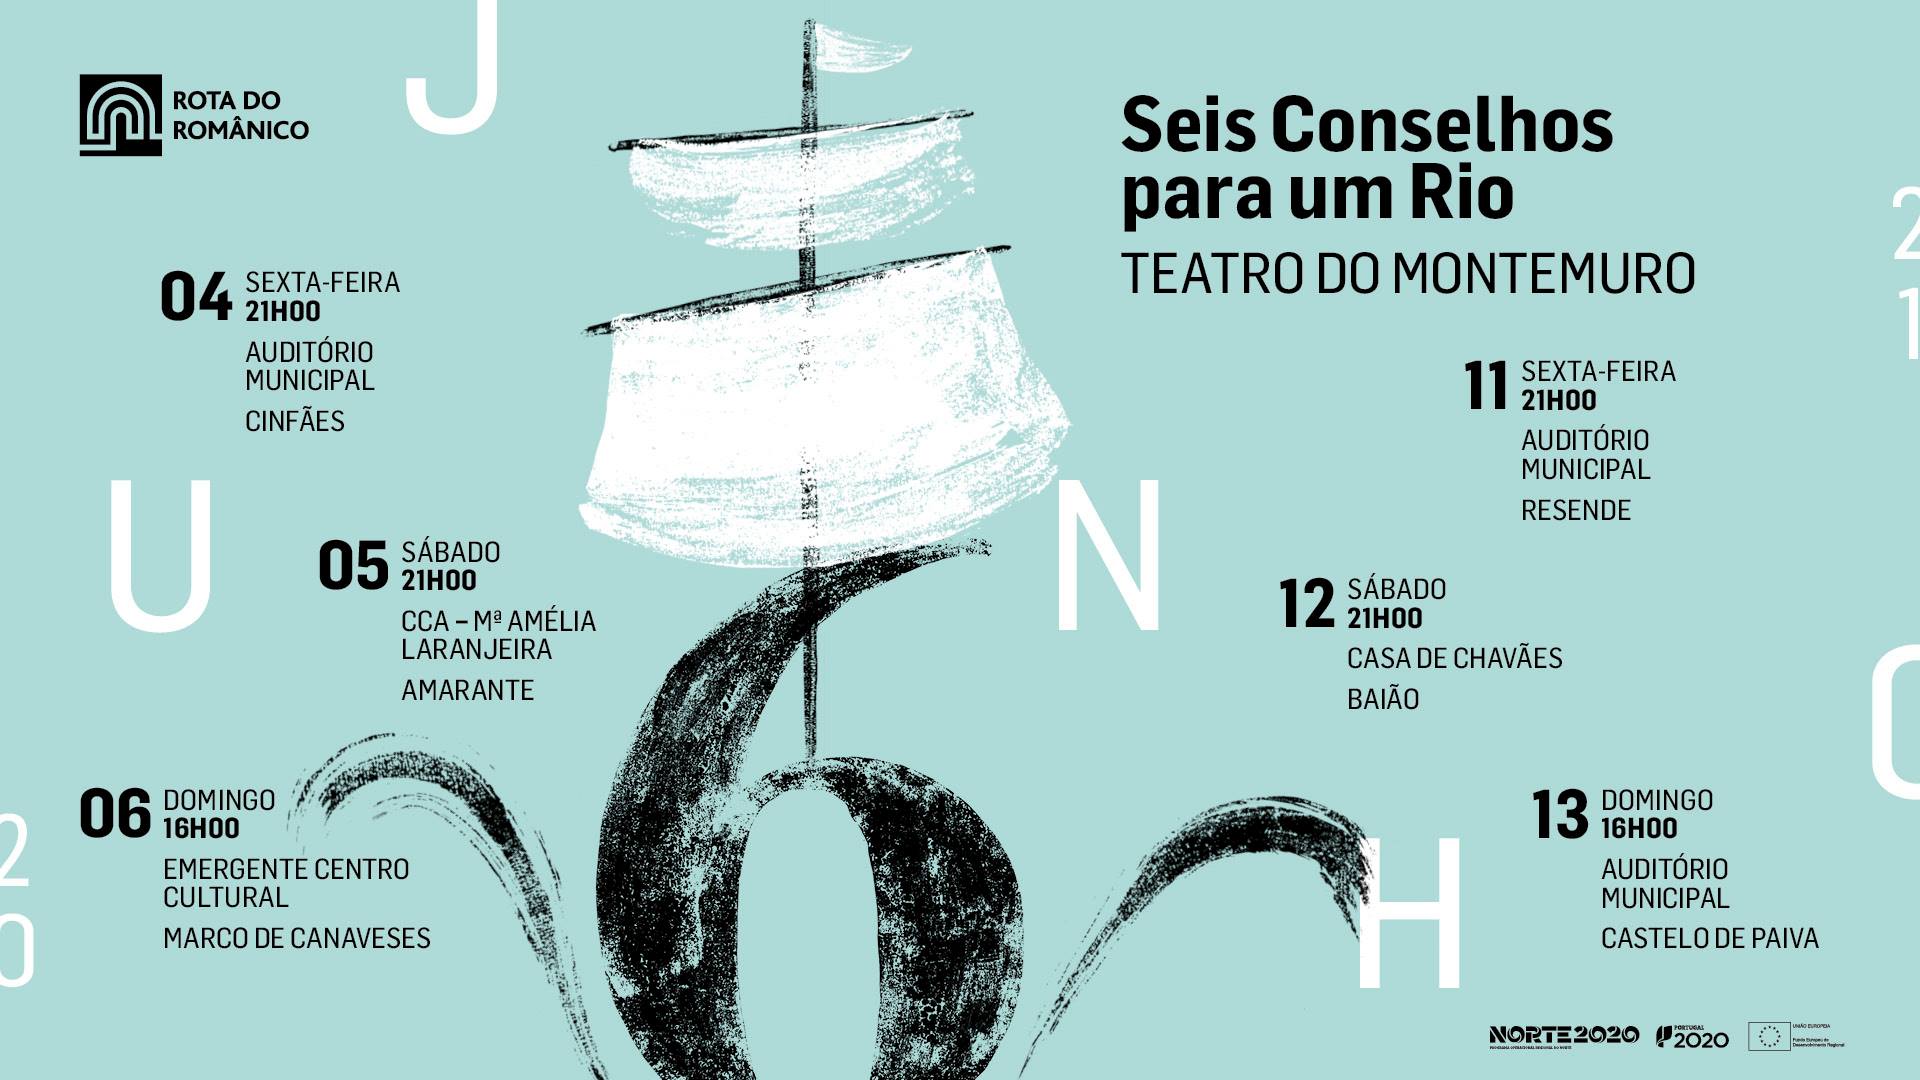 Baião | Seis Conselhos para um Rio | Teatro do Montemuro